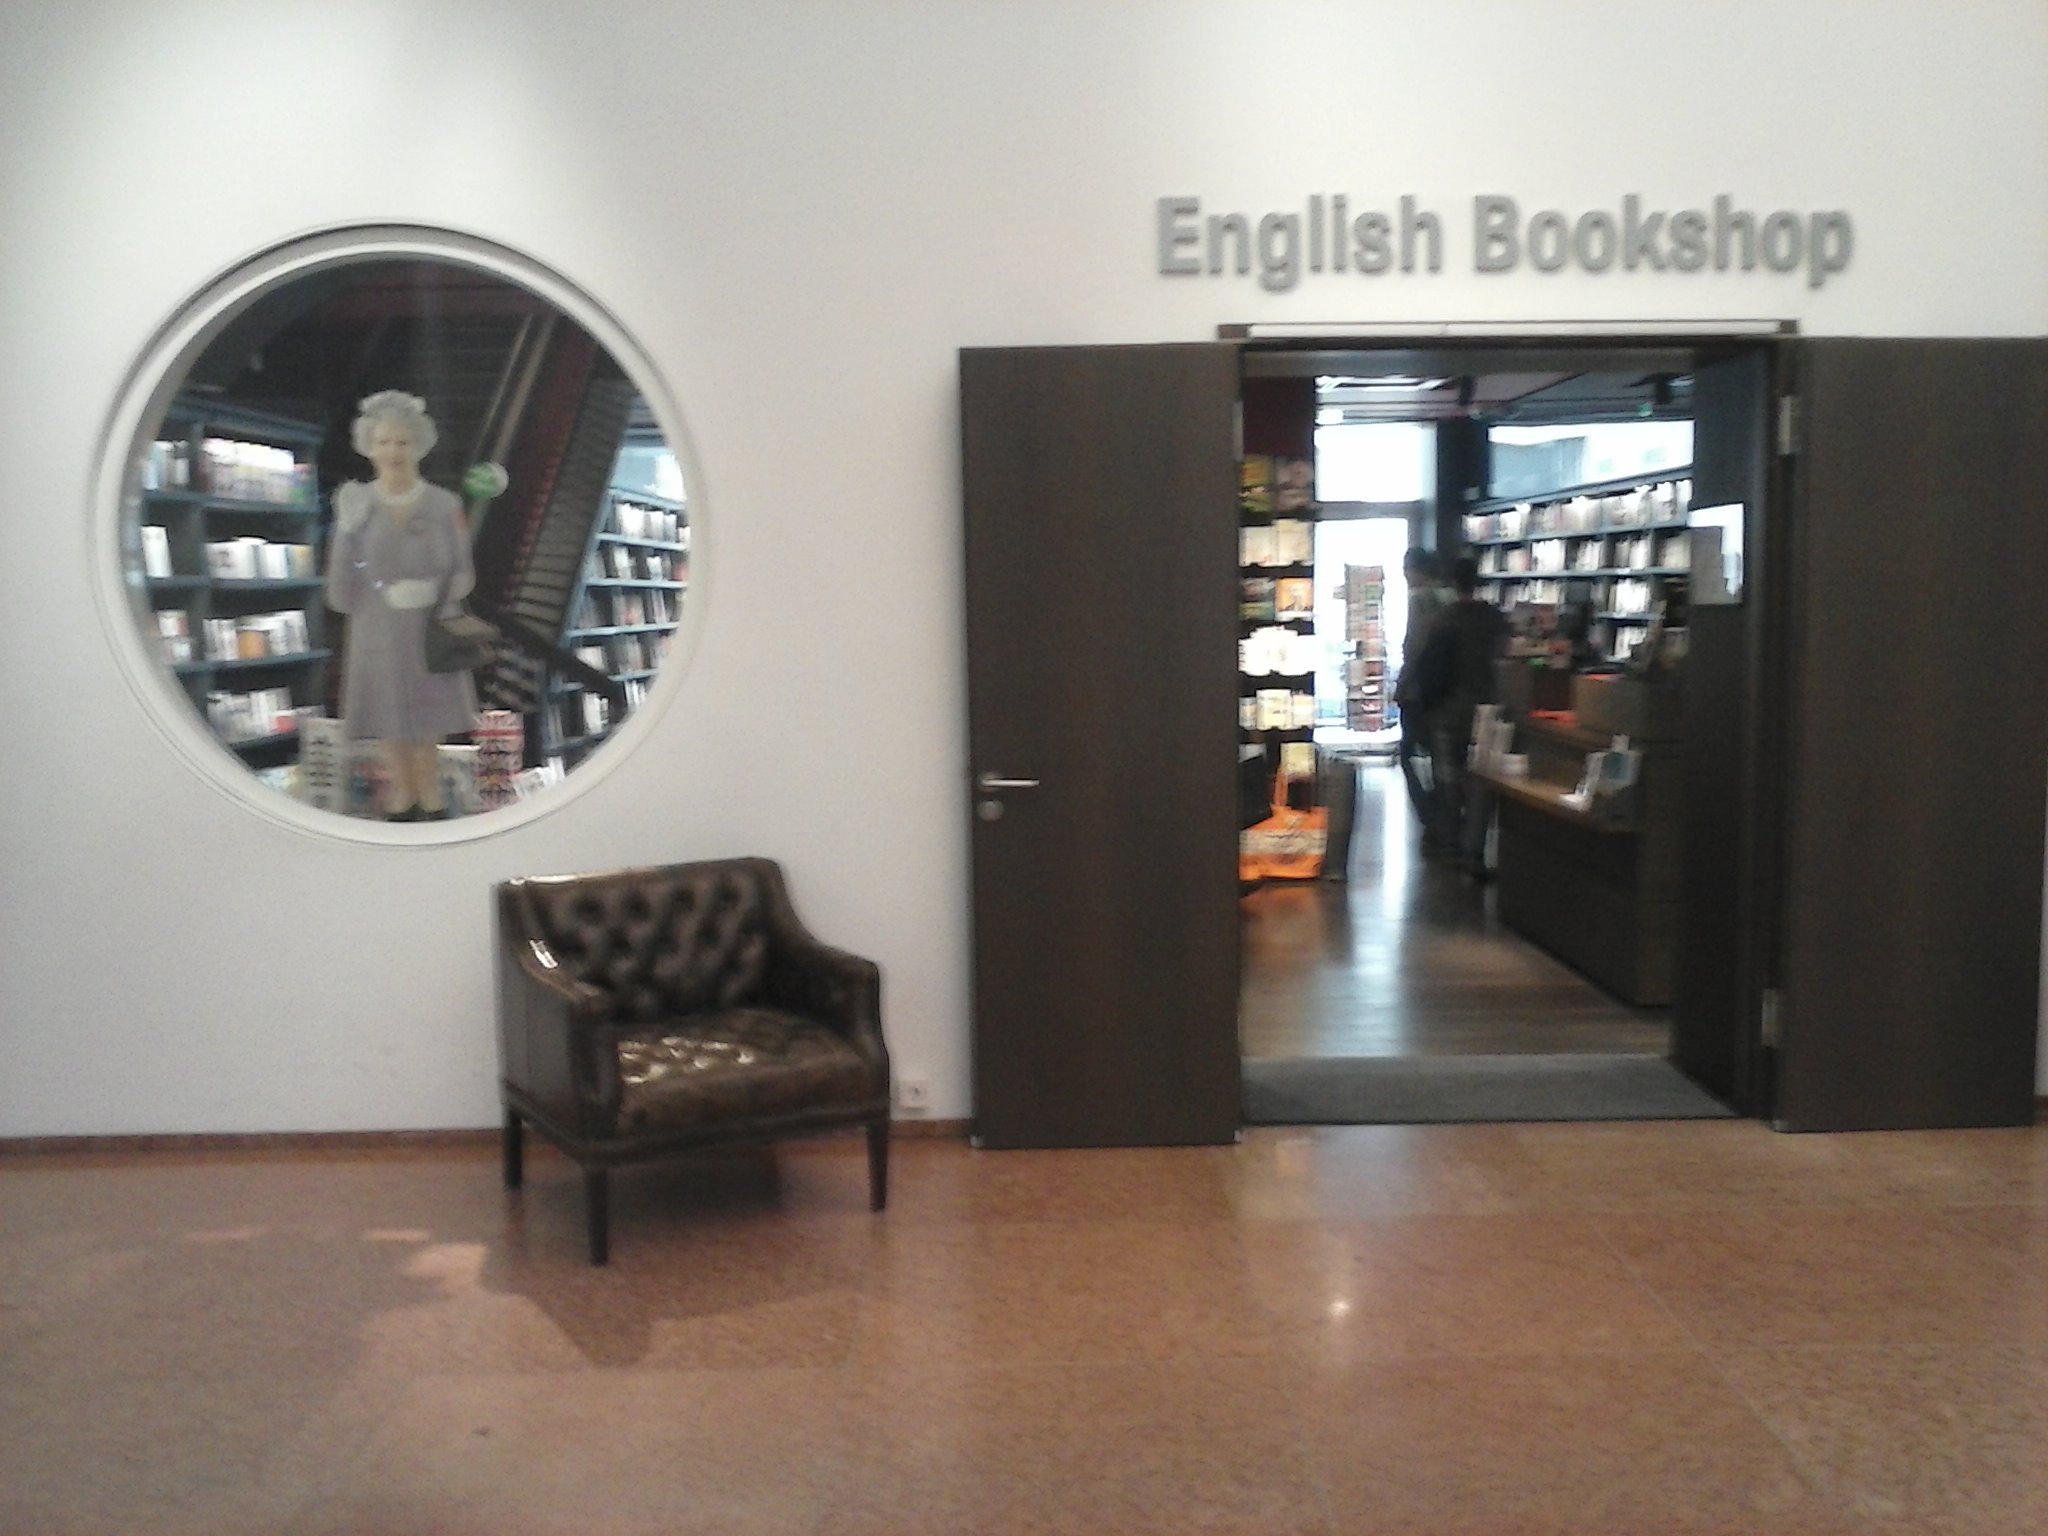 Librería británica de Berlín